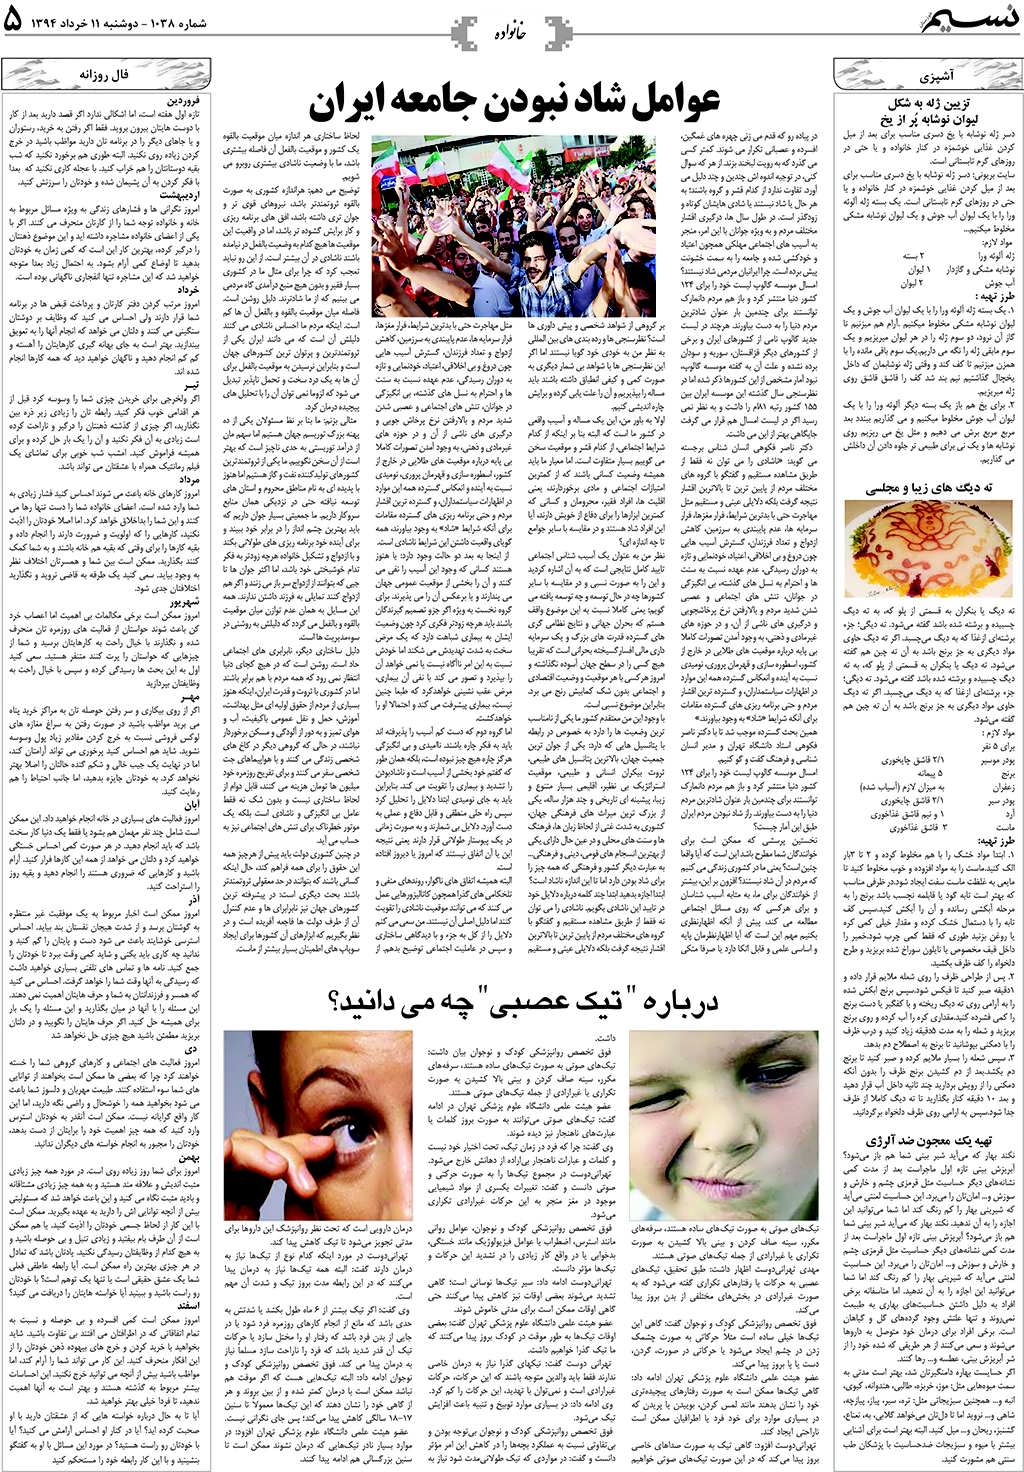 صفحه خانواده روزنامه نسیم شماره 1038